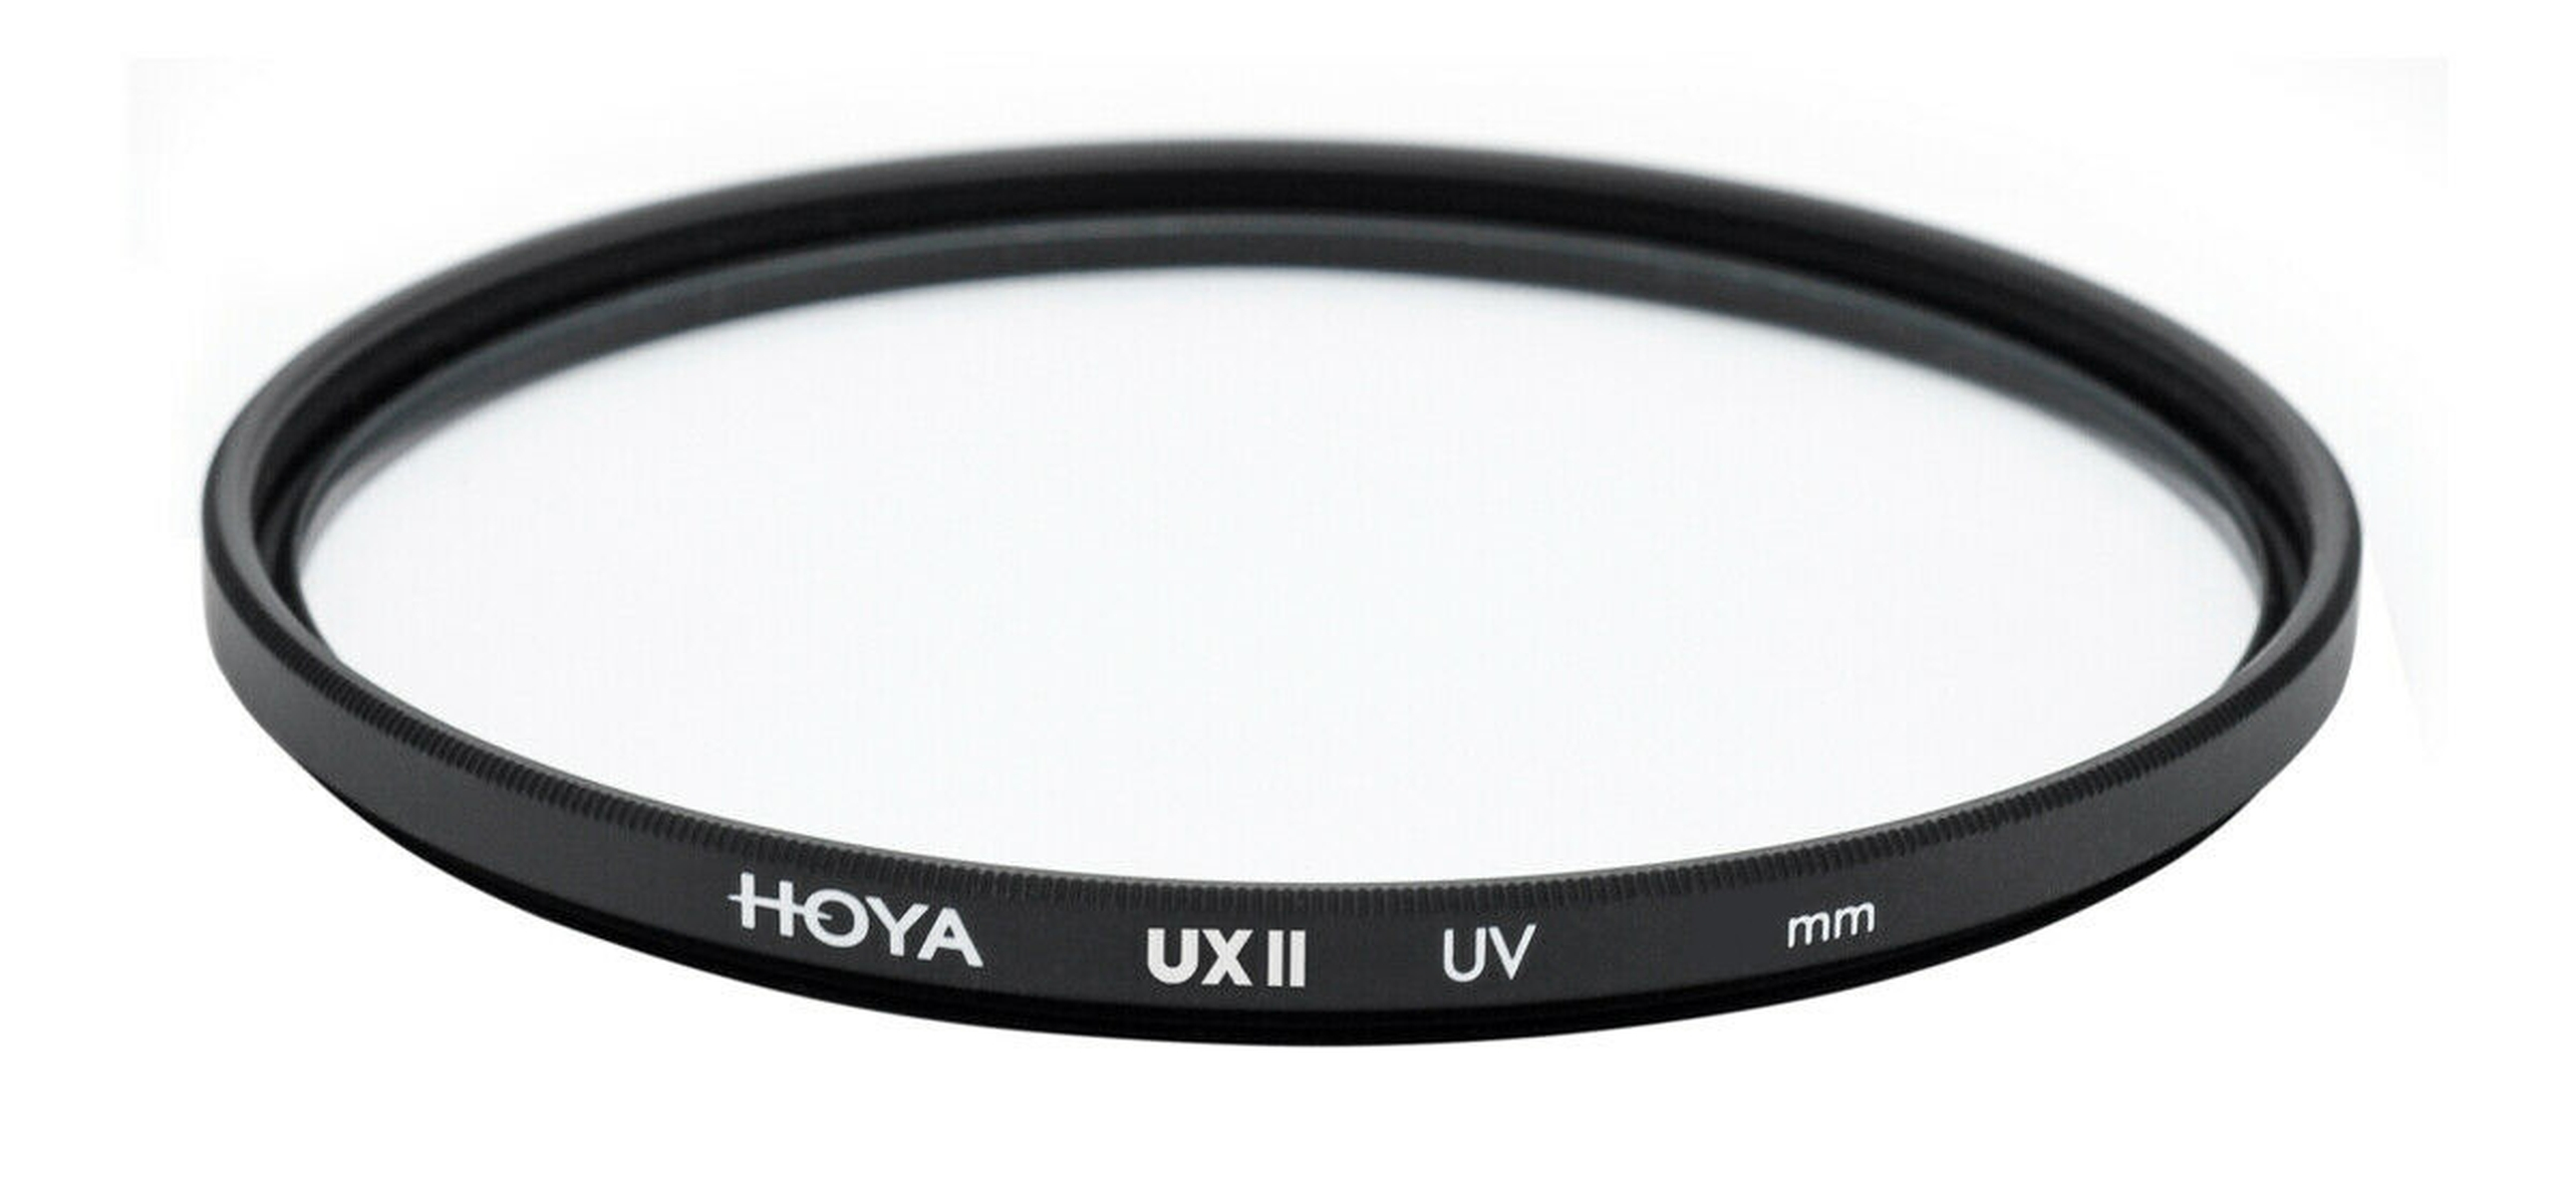 58 II UX UV mm Filter HOYA